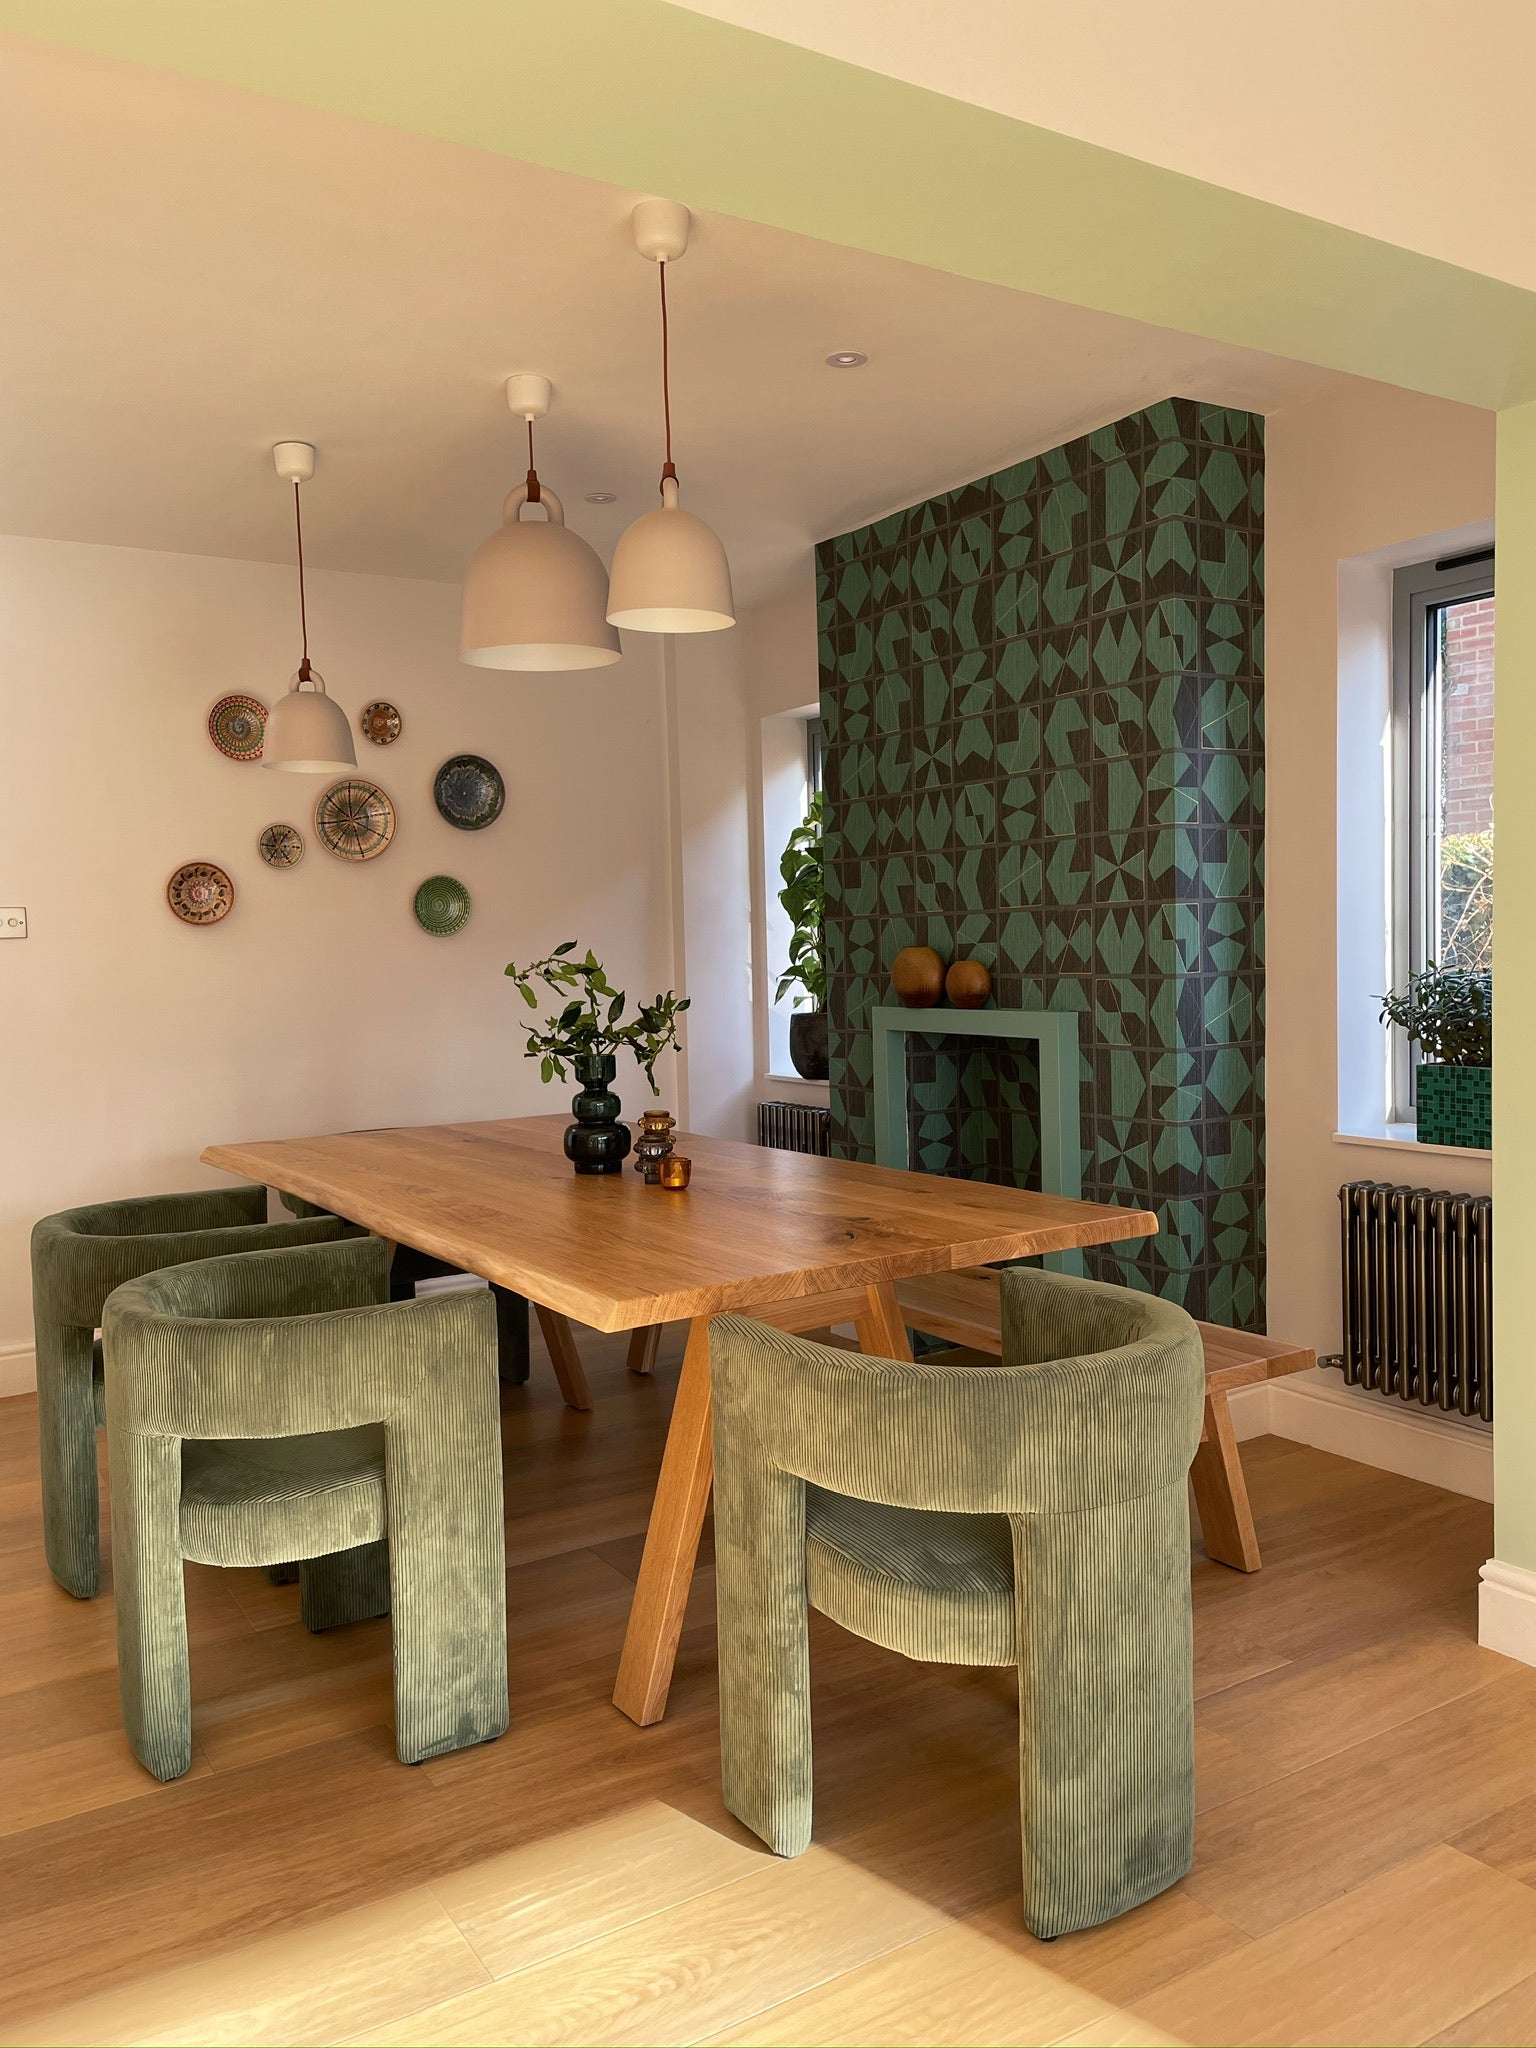 Interior design, dining space